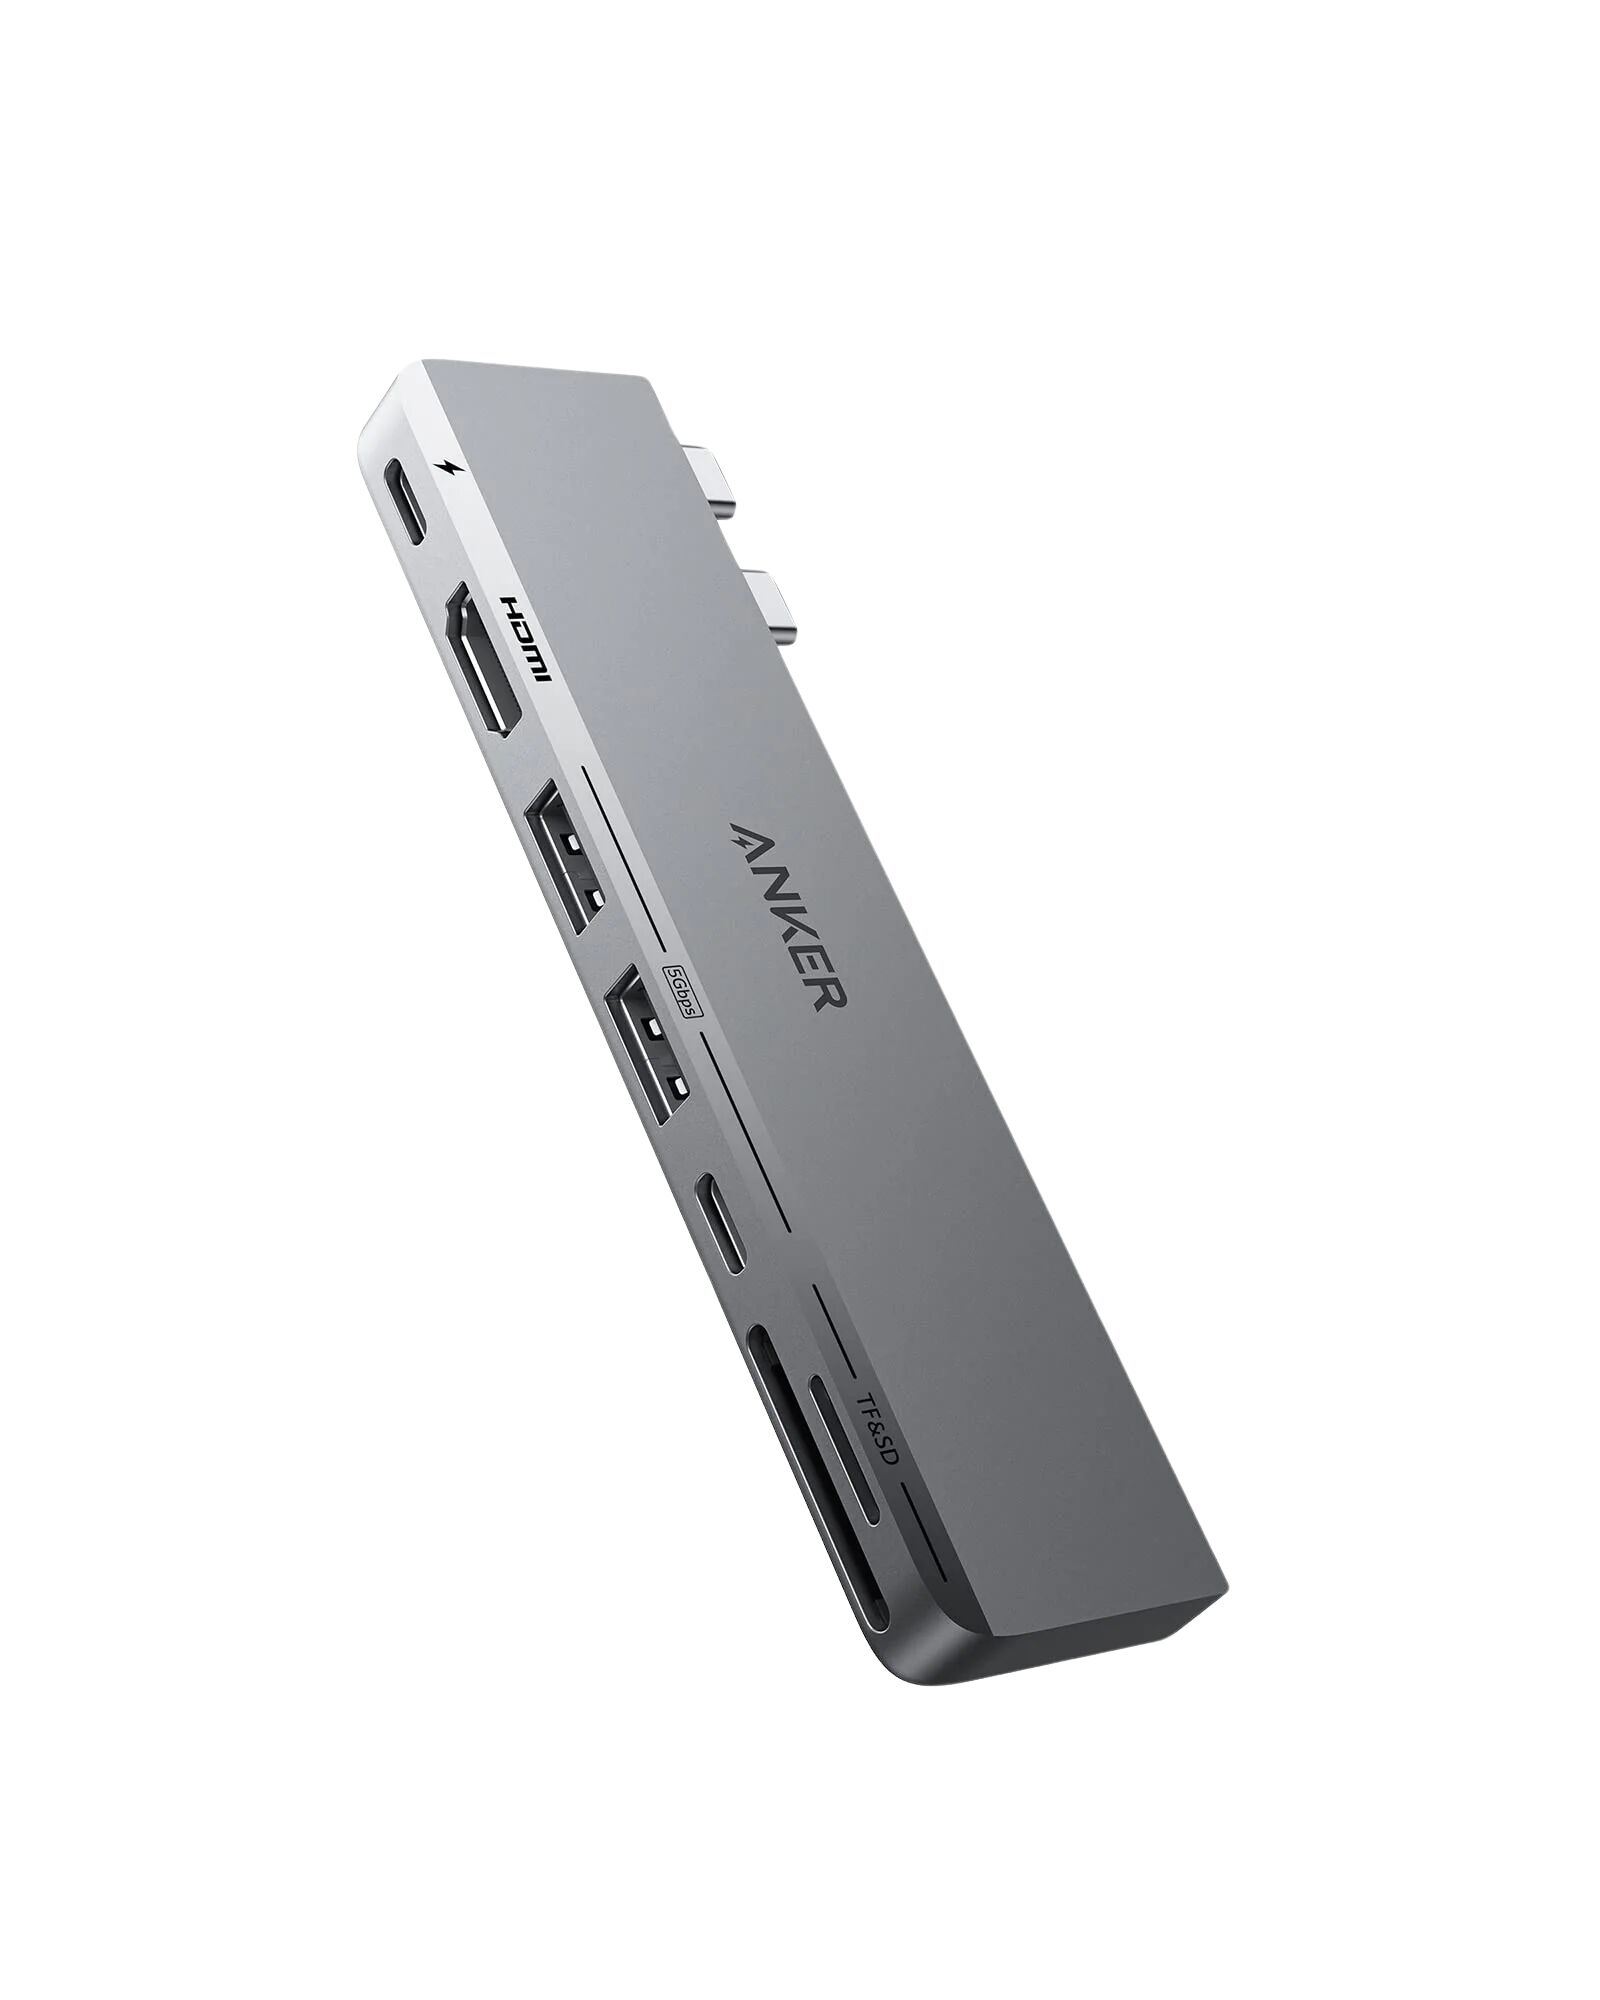 Anker 547 USB-C Hub (7-in-2, for MacBook)